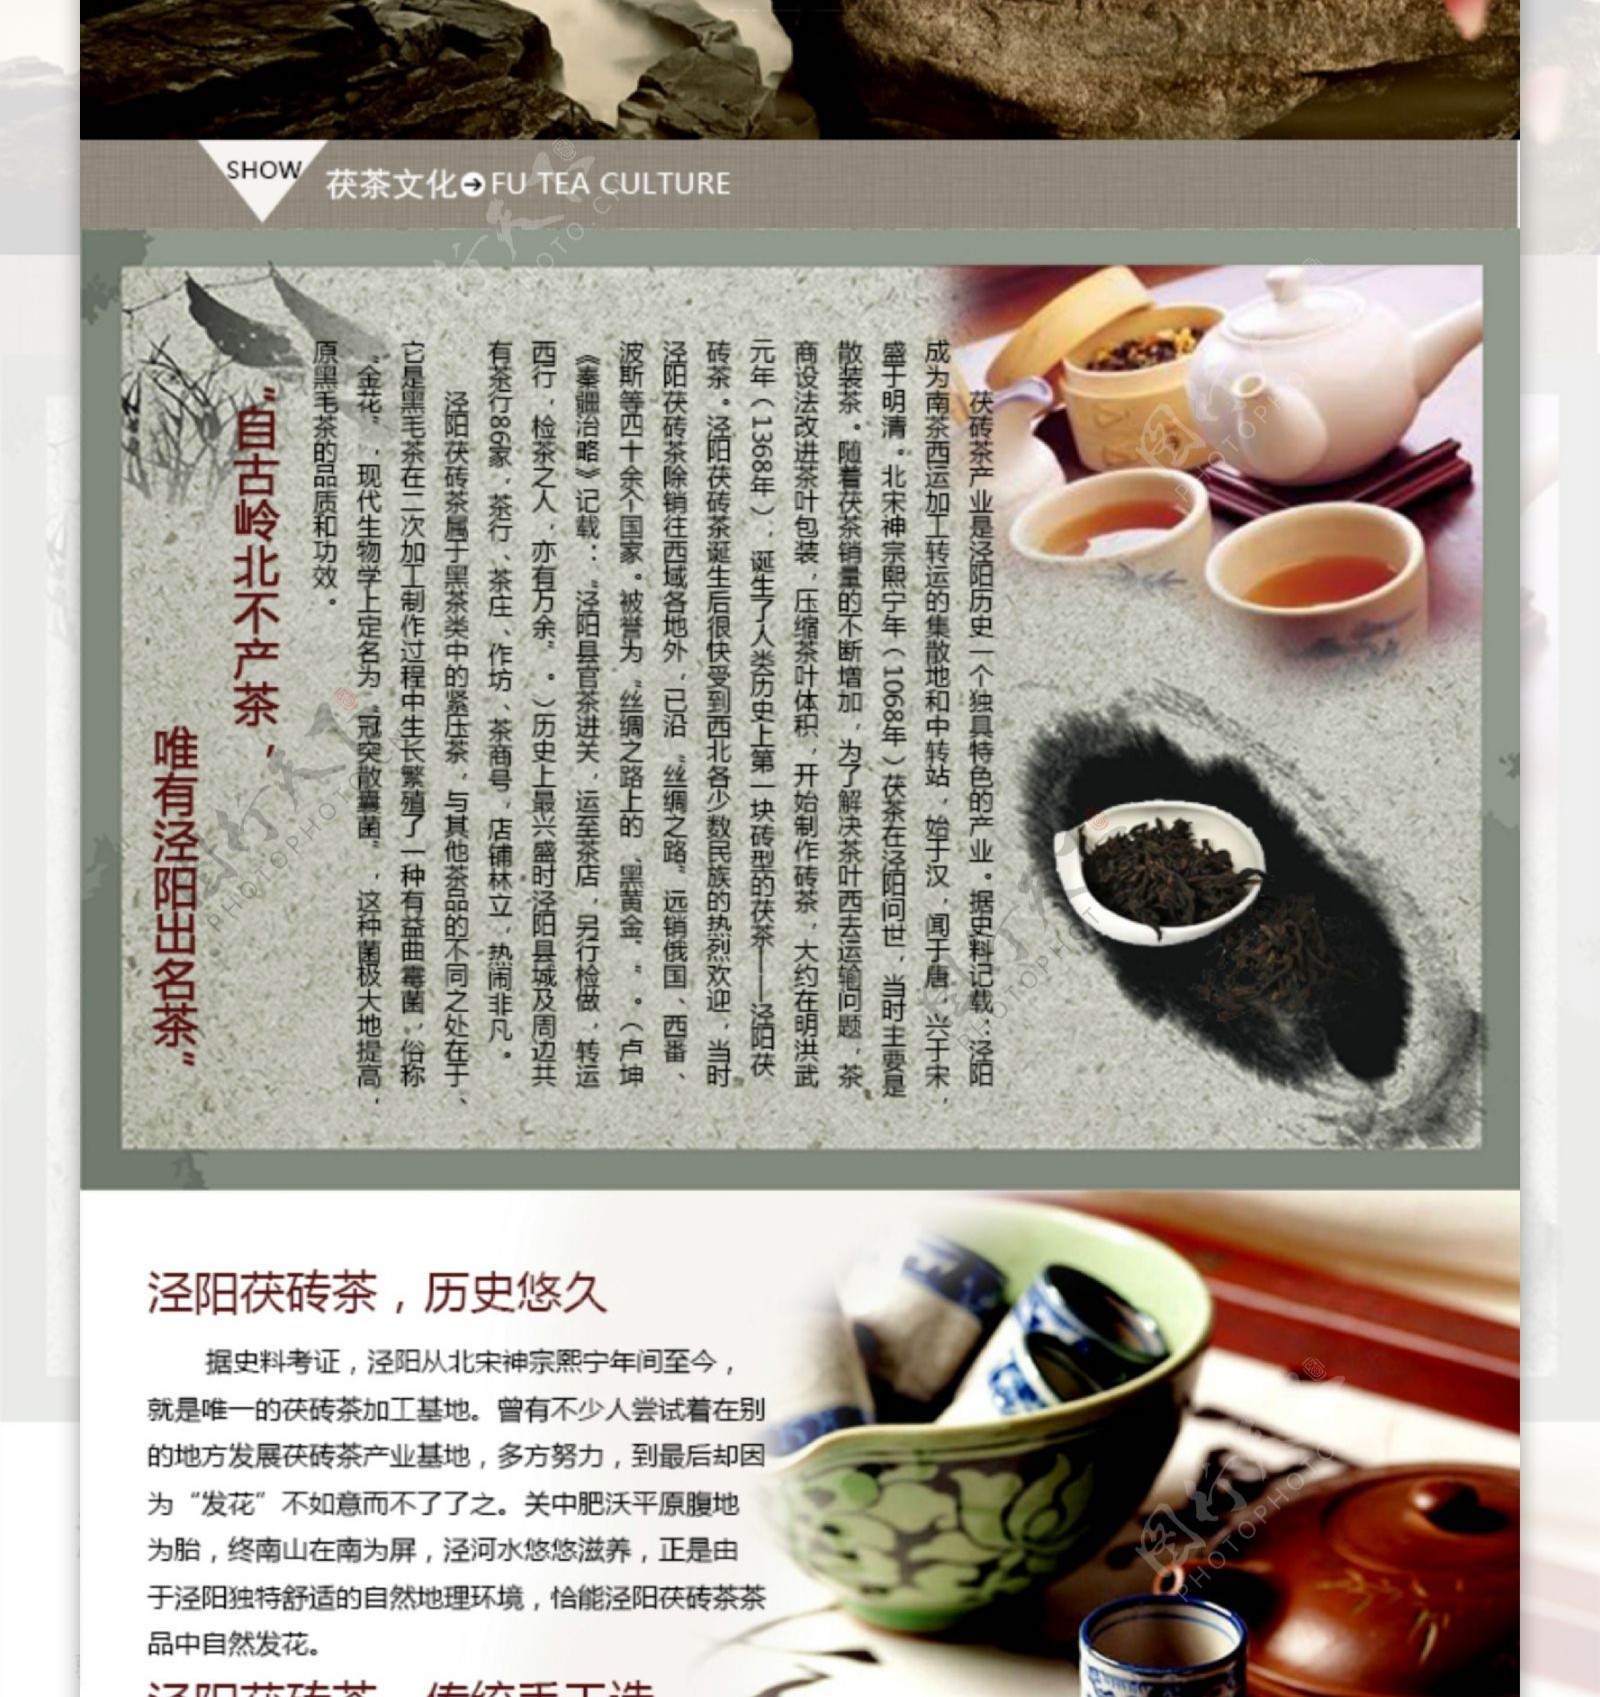 泾阳茯砖茶淘宝详情页设计